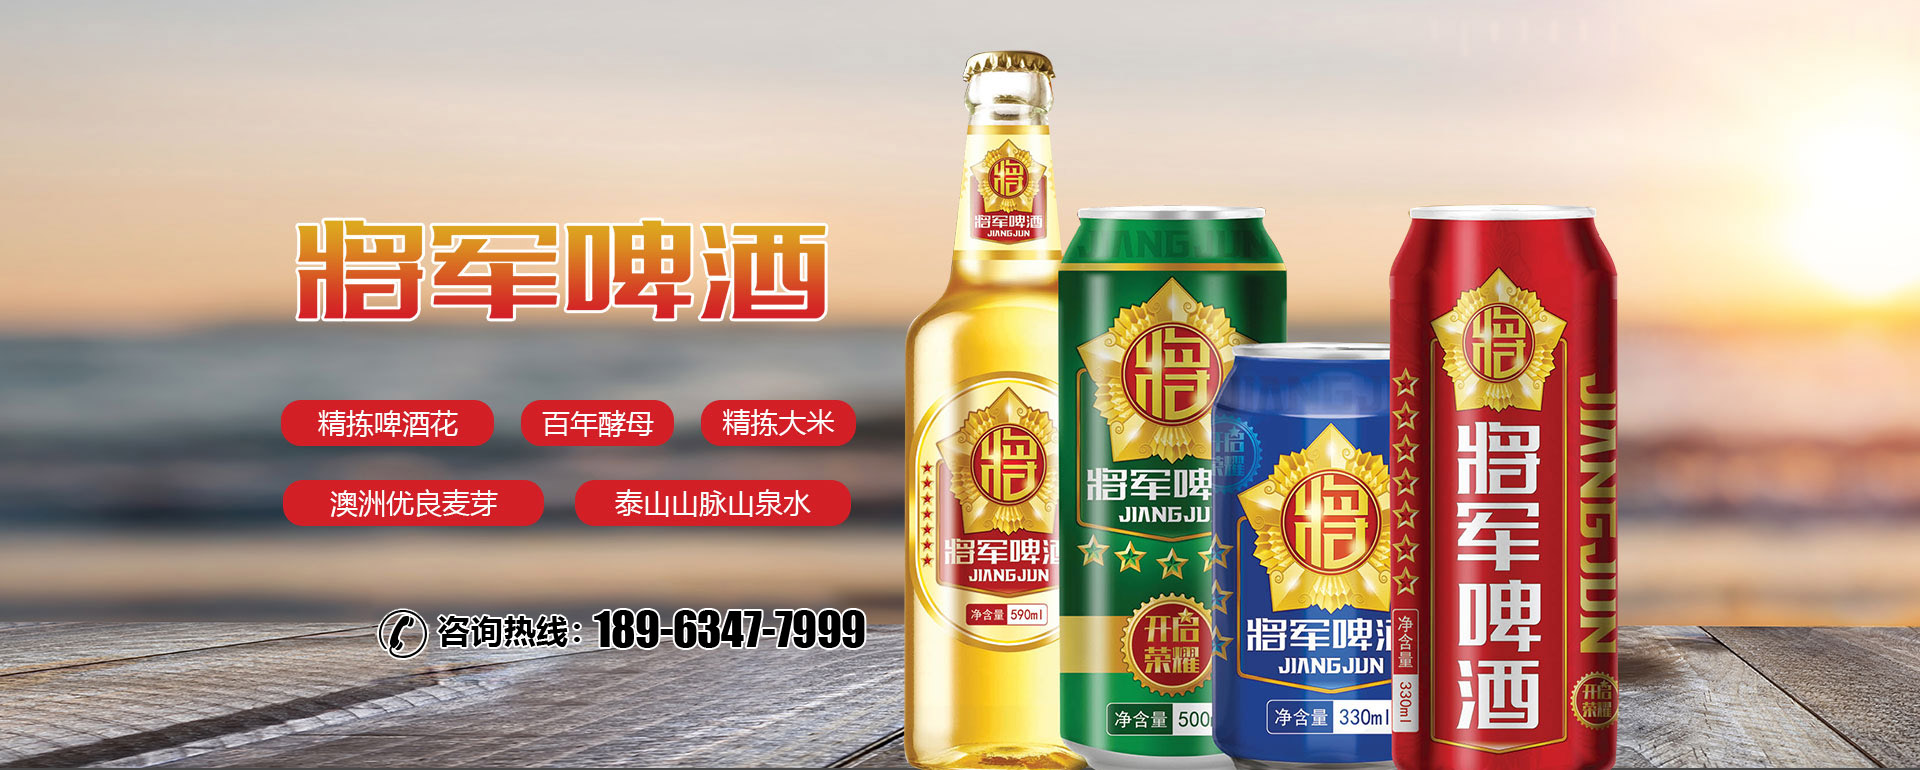 山東省鸿运国际啤酒有限公司